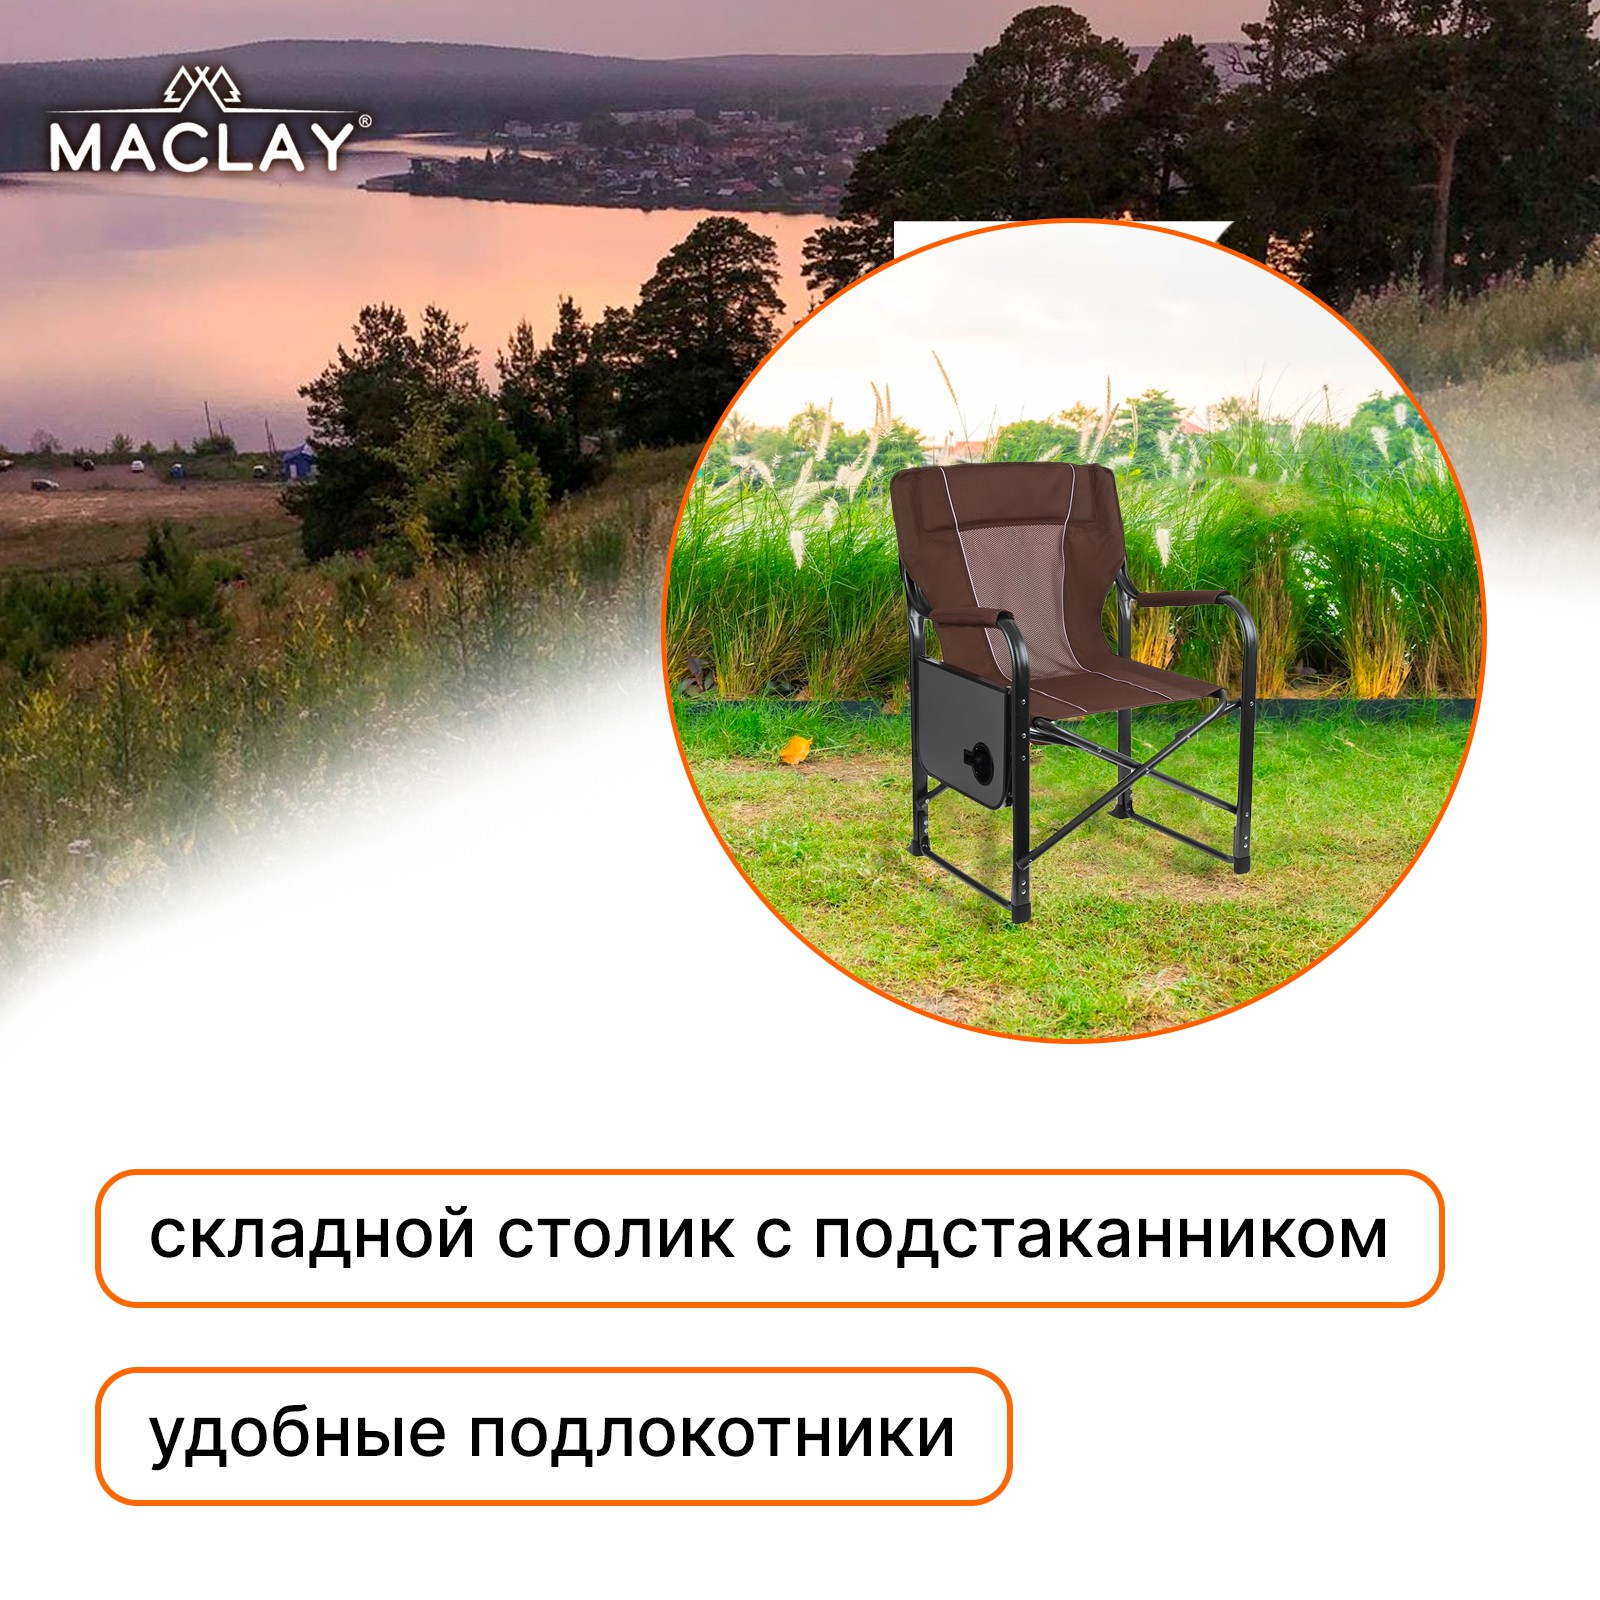 Кресло Maclay туристическое стол с подстаканником р. 63 х 47 х 94 см цвет коричневый - фото 2